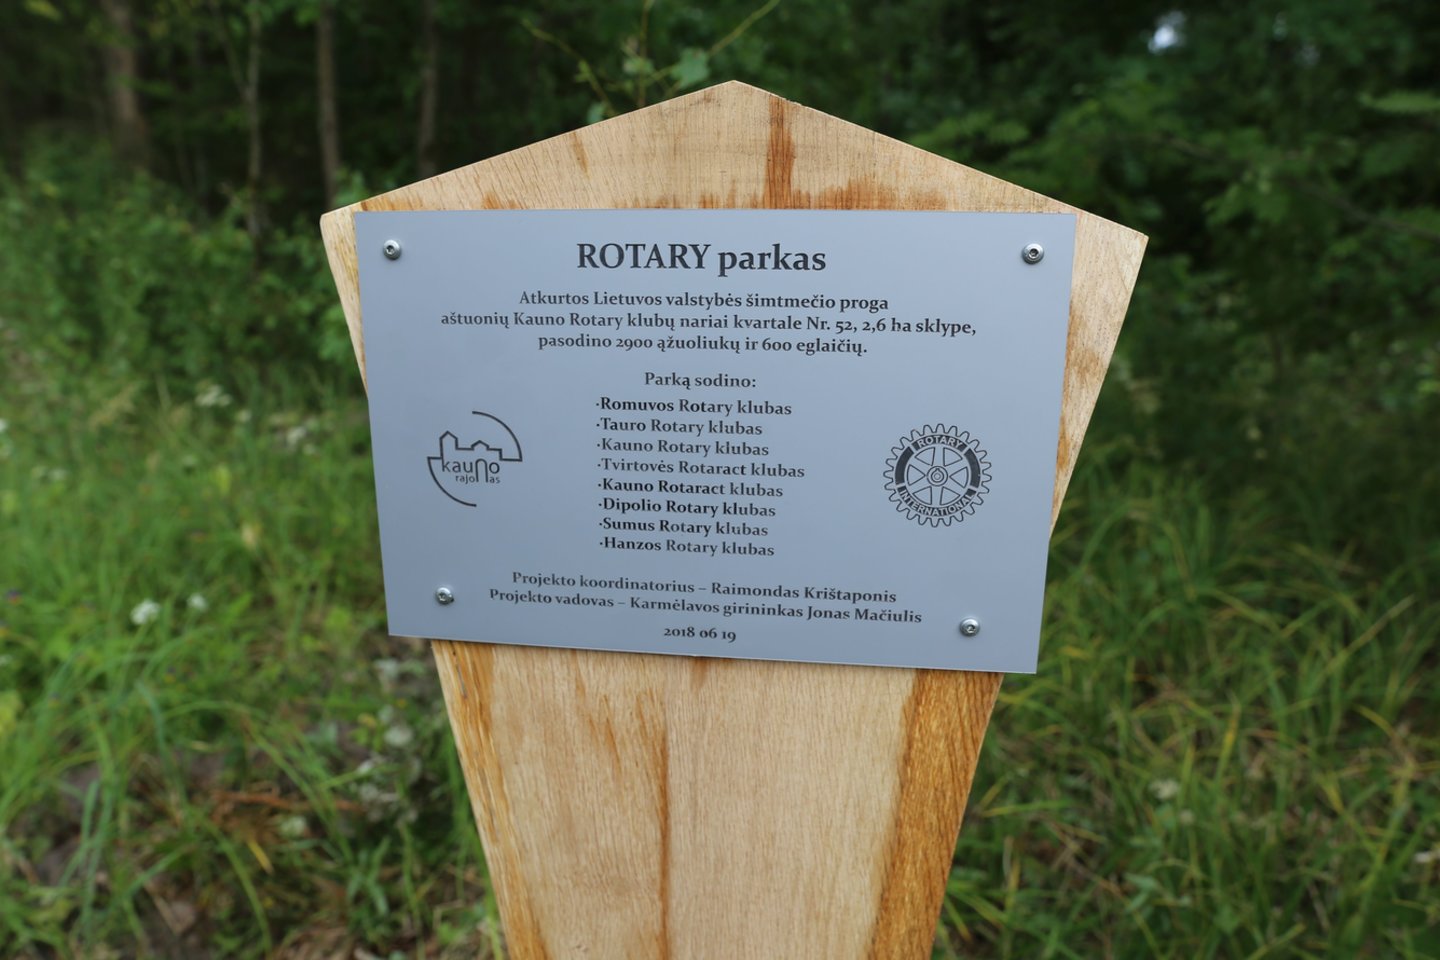  Karmėlavos girininkijoje 3 hektarų teritorijoje pasodintas Rotary parkas.<br> Kauno rajono savivaldybės nuotr.